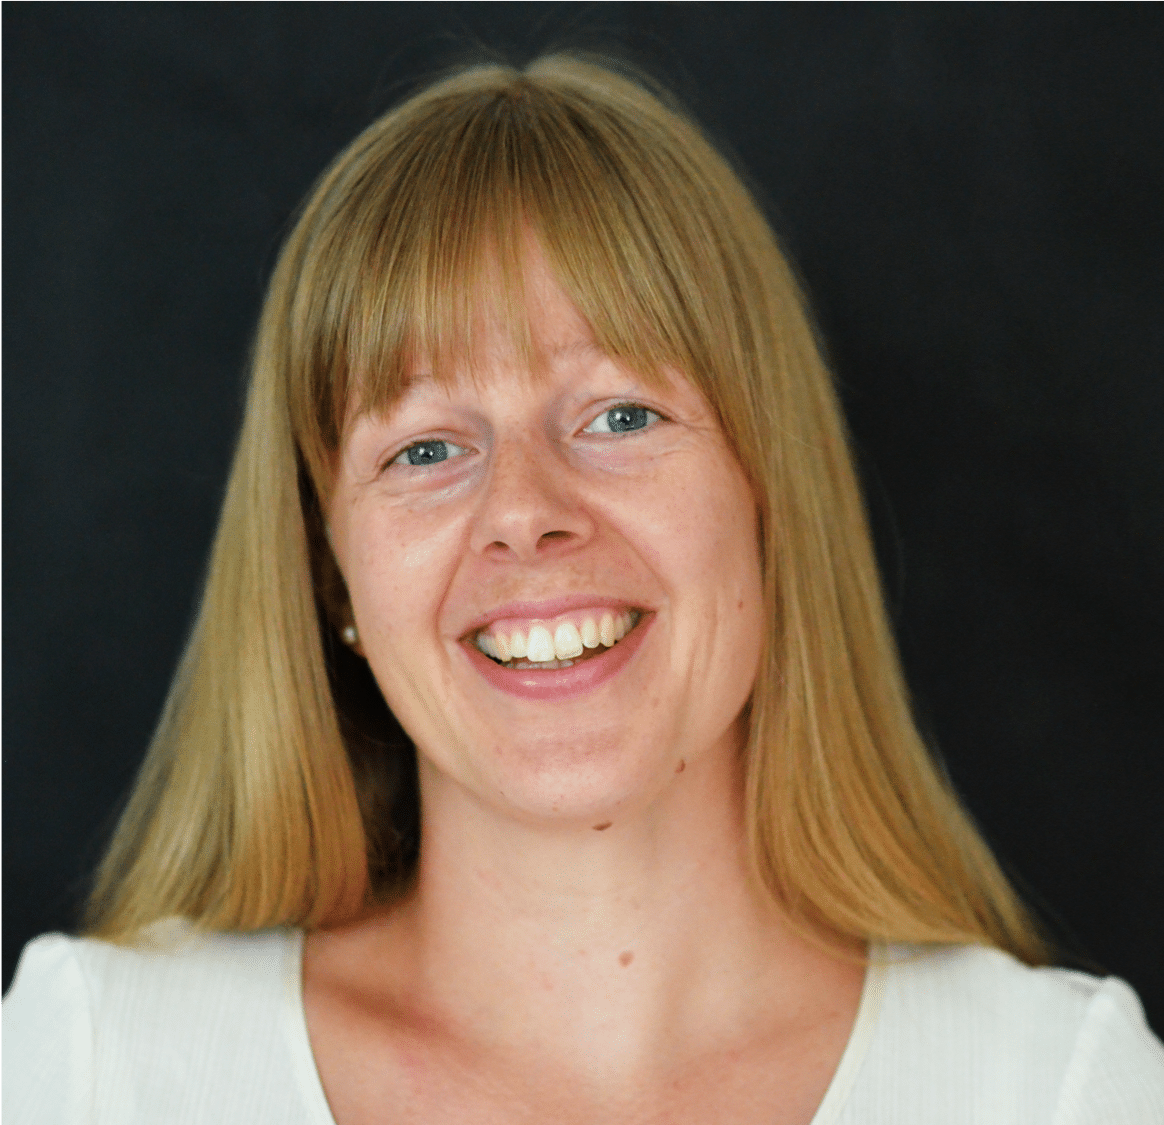 Kirstine Wentzlau Martinsen